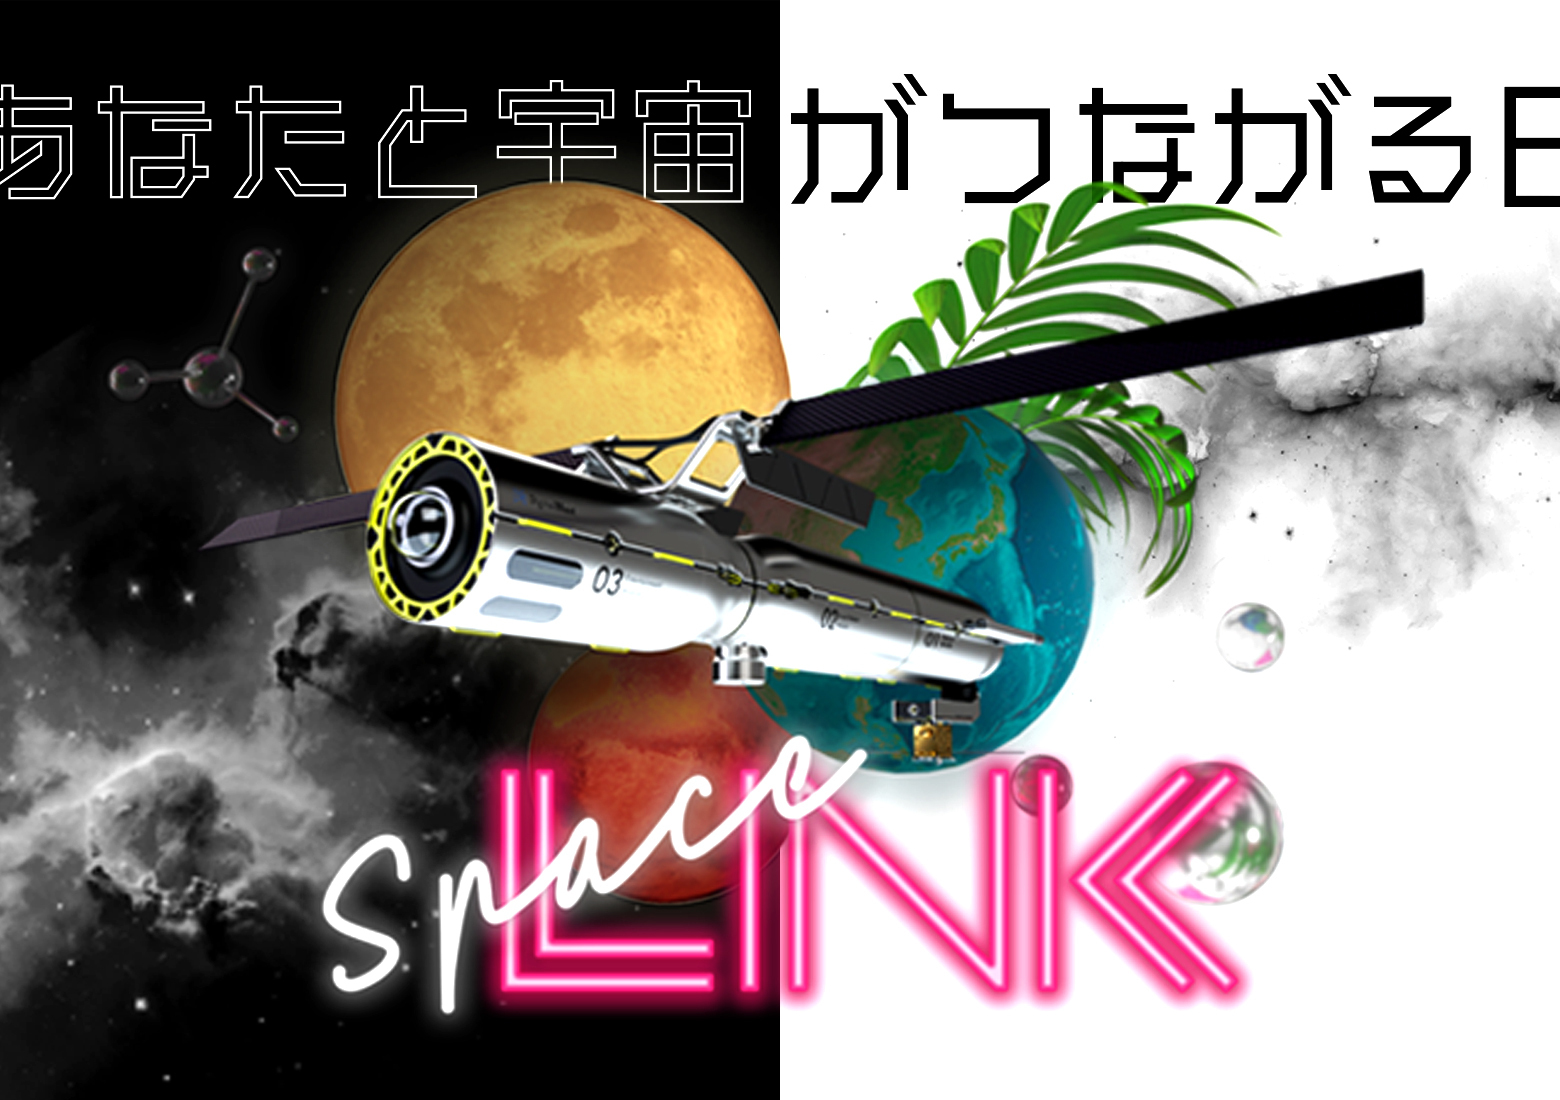 総合宇宙イベント「SpaceLINK」、9/13（水）に開催 ―参加申込を開始